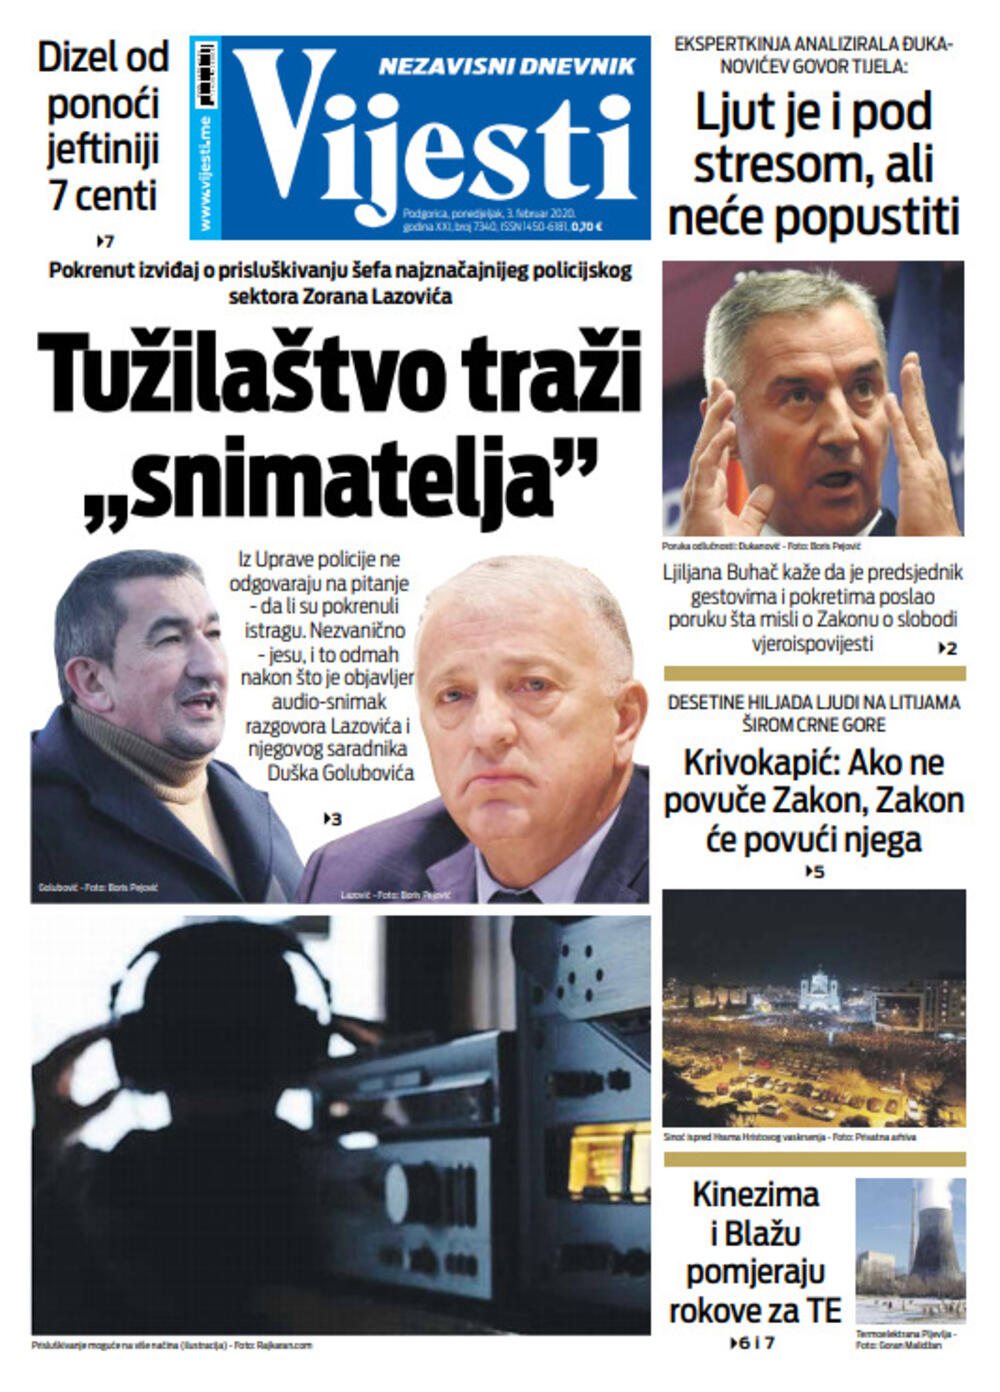 Naslovna strana "Vijesti" za treći februar 2020. godine, Foto: "Vijesti"